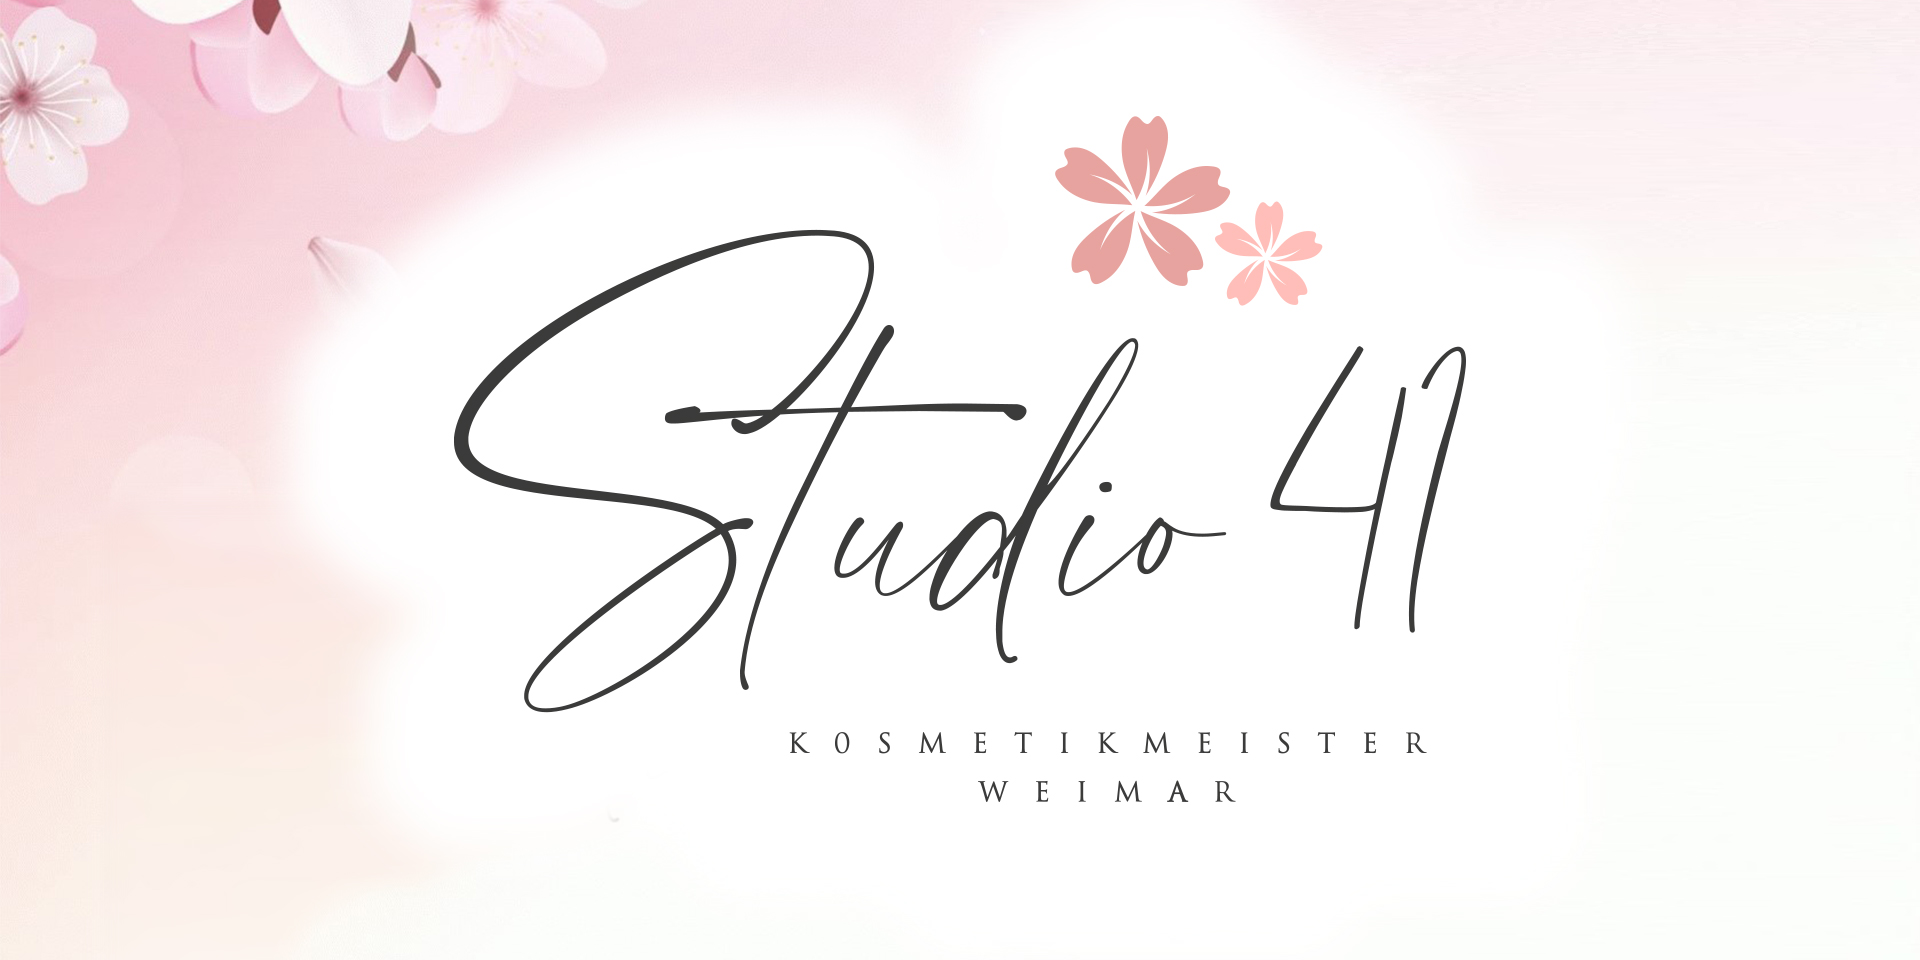 Kosmetikmeister Studio 41